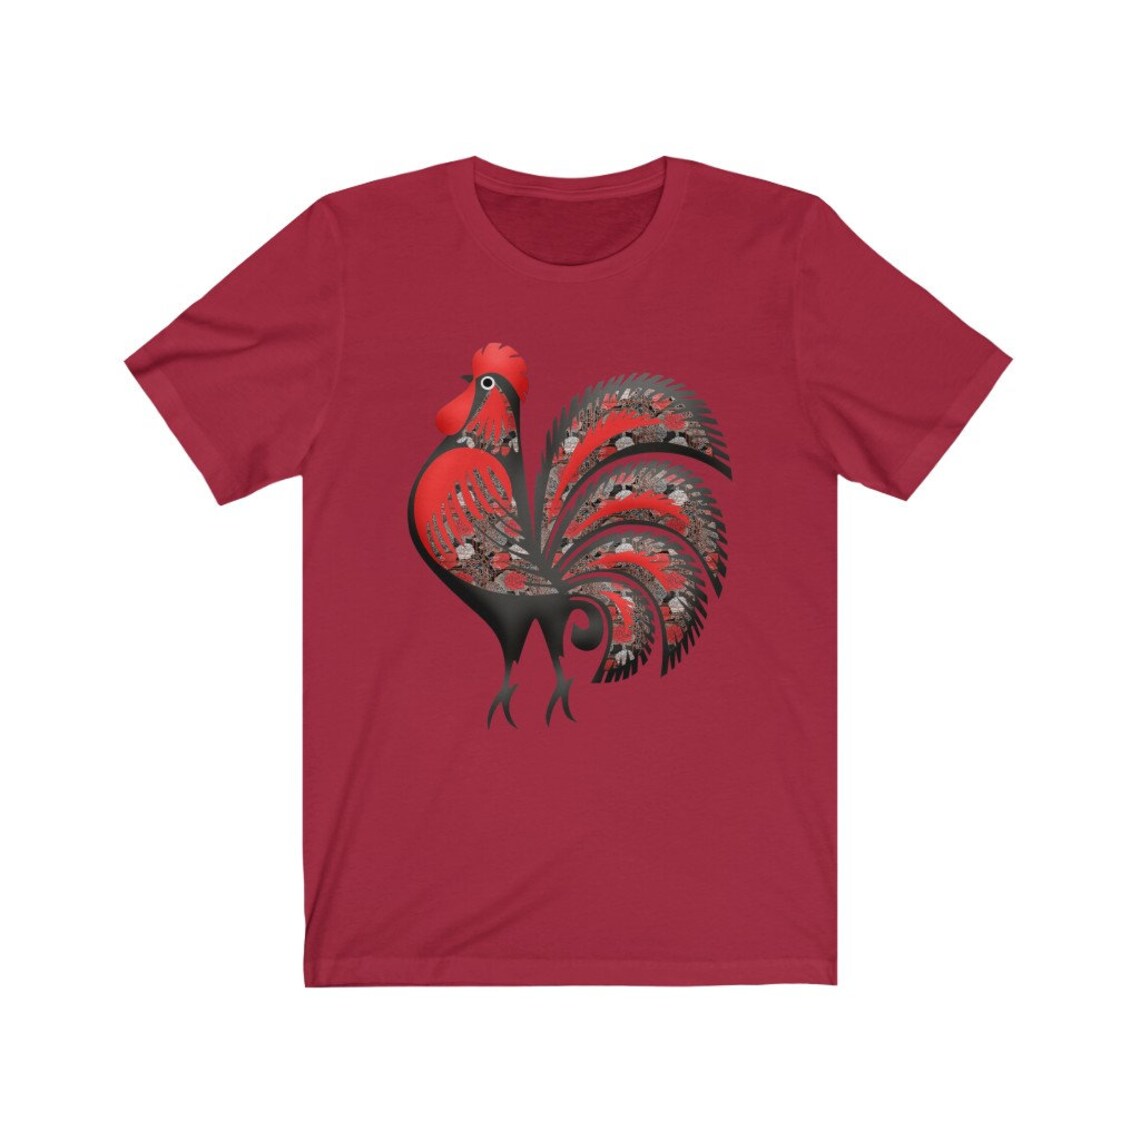 Rooster Shirt Rooster Tshirt Rooster Tee Shirt Rooster | Etsy